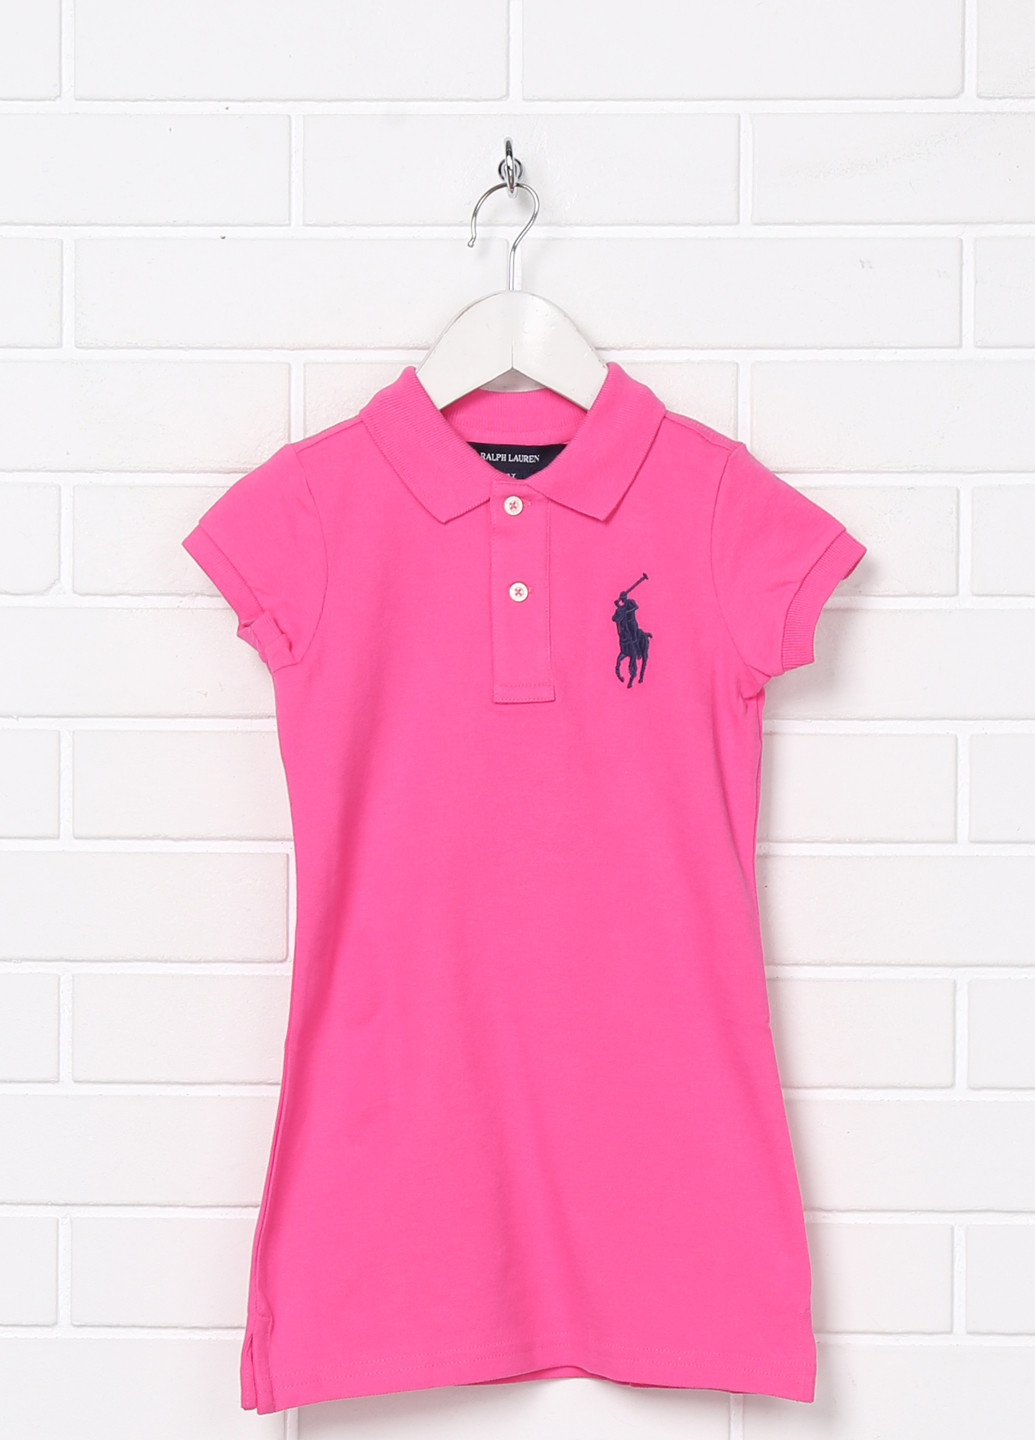 Розовая детская футболка-поло для девочки Ralph Lauren с логотипом